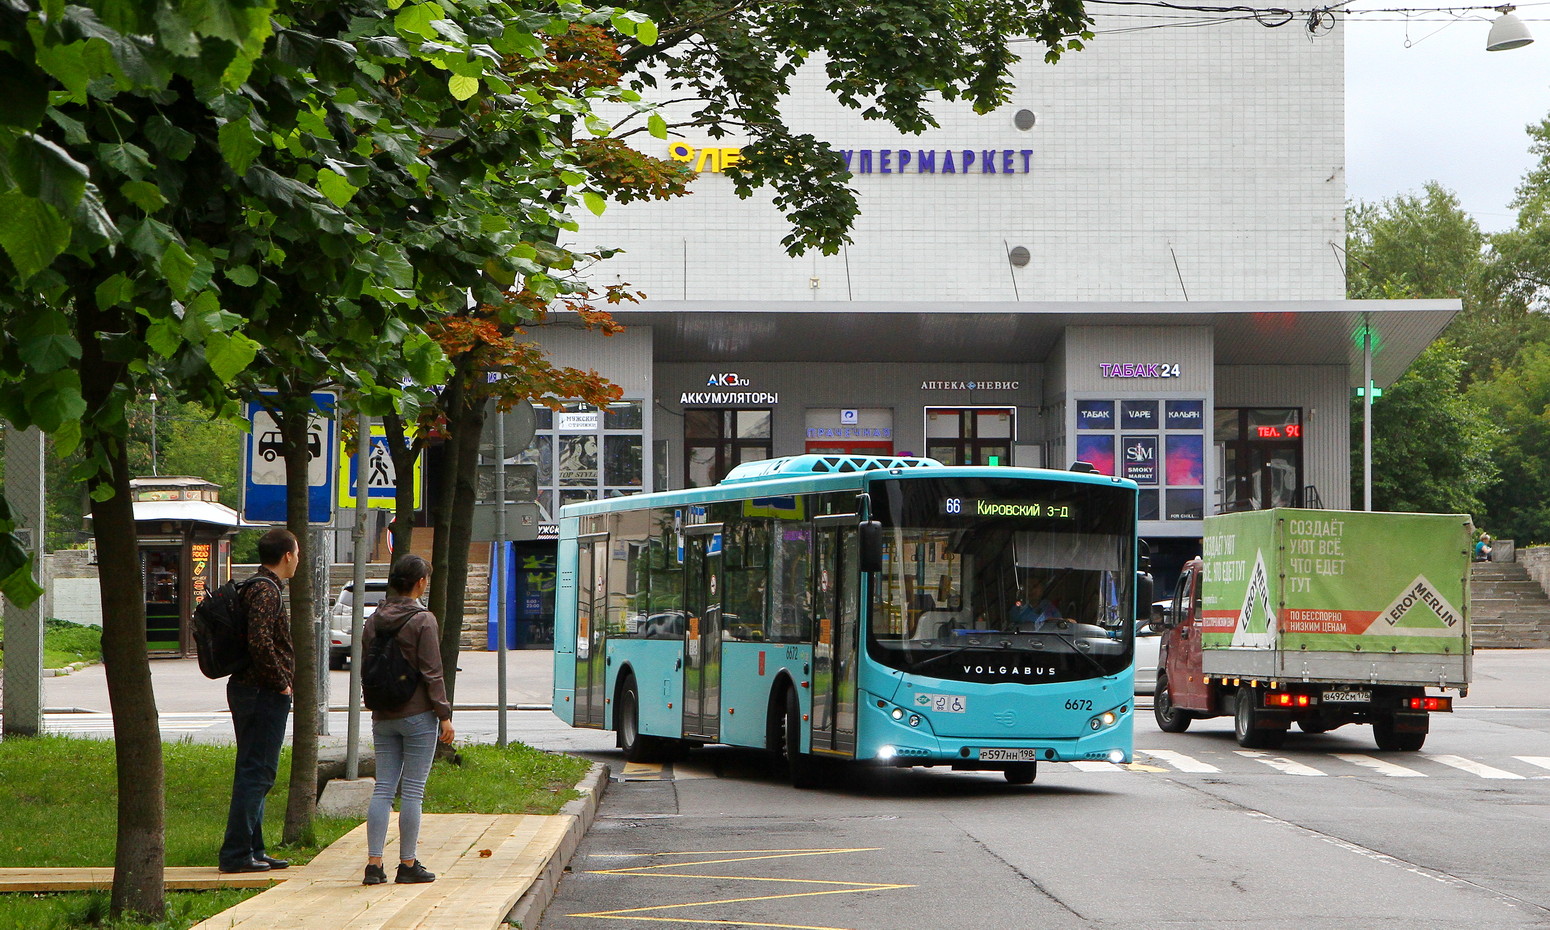 Sanktpēterburga, Volgabus-5270.G2 (LNG) № 6672